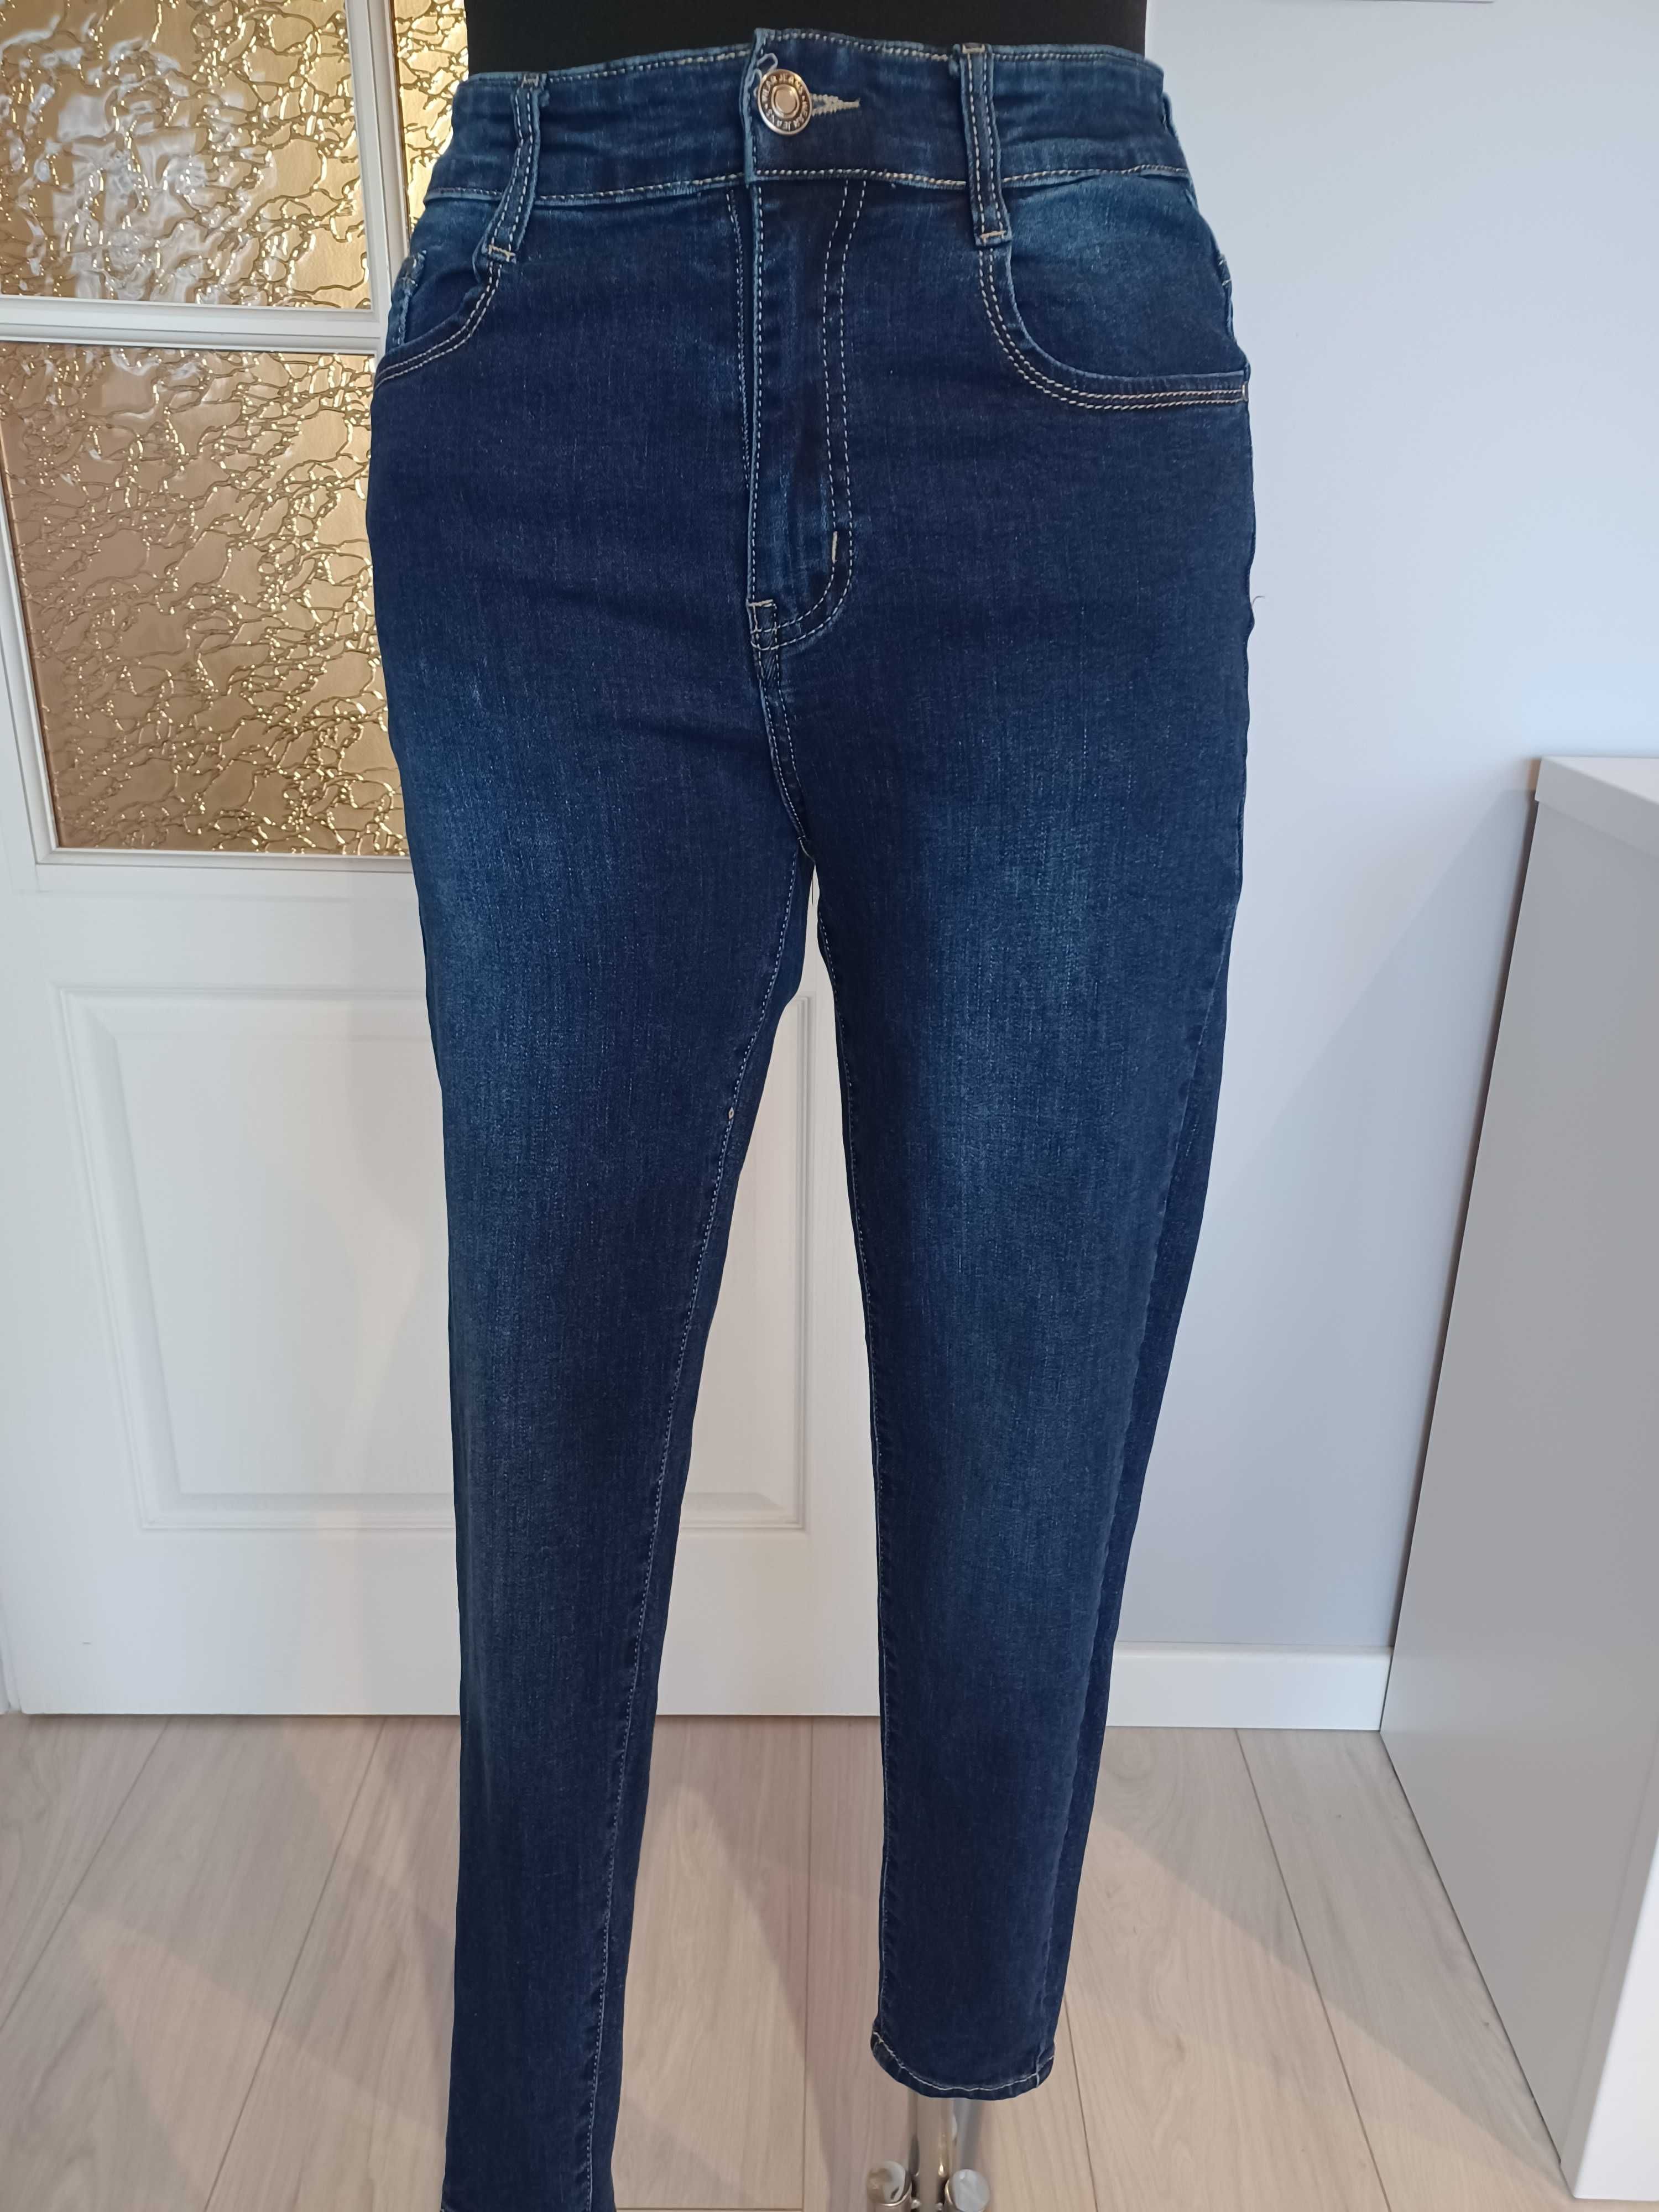 Spodnie jeans damskie granatowe MISS YOU  rozmiar 38